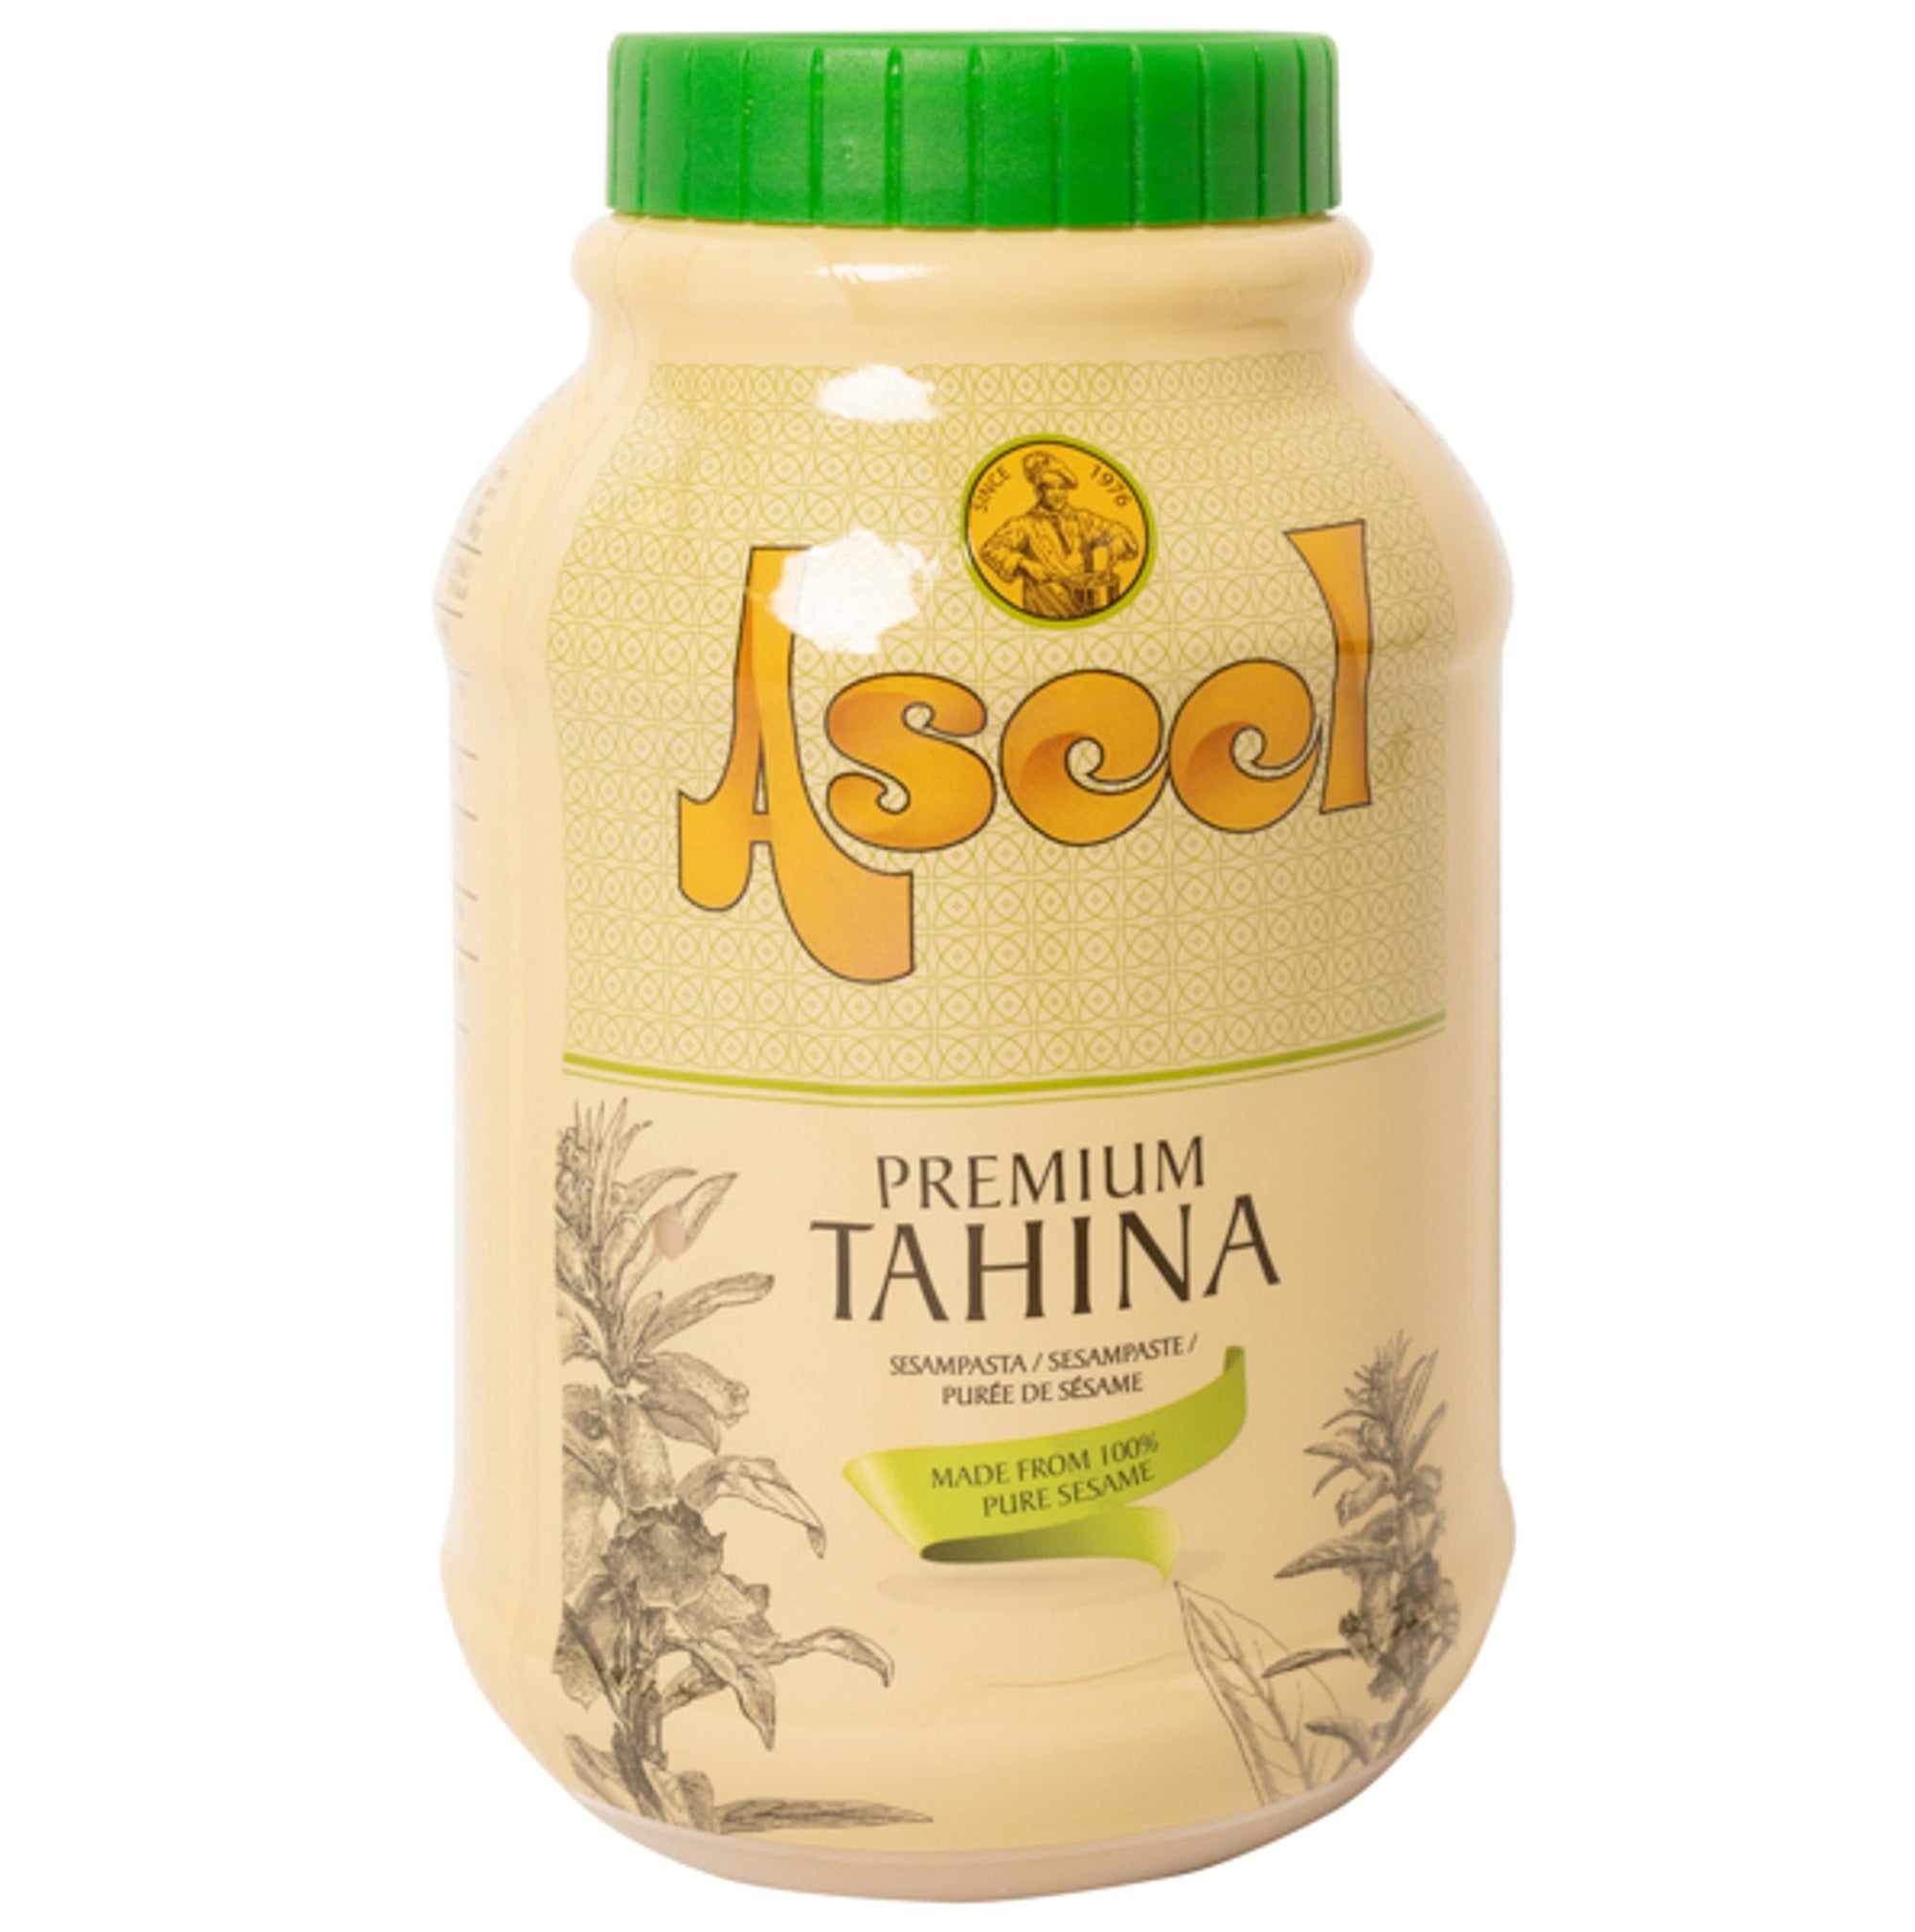 Tahina Premium, Aseel, 800gr